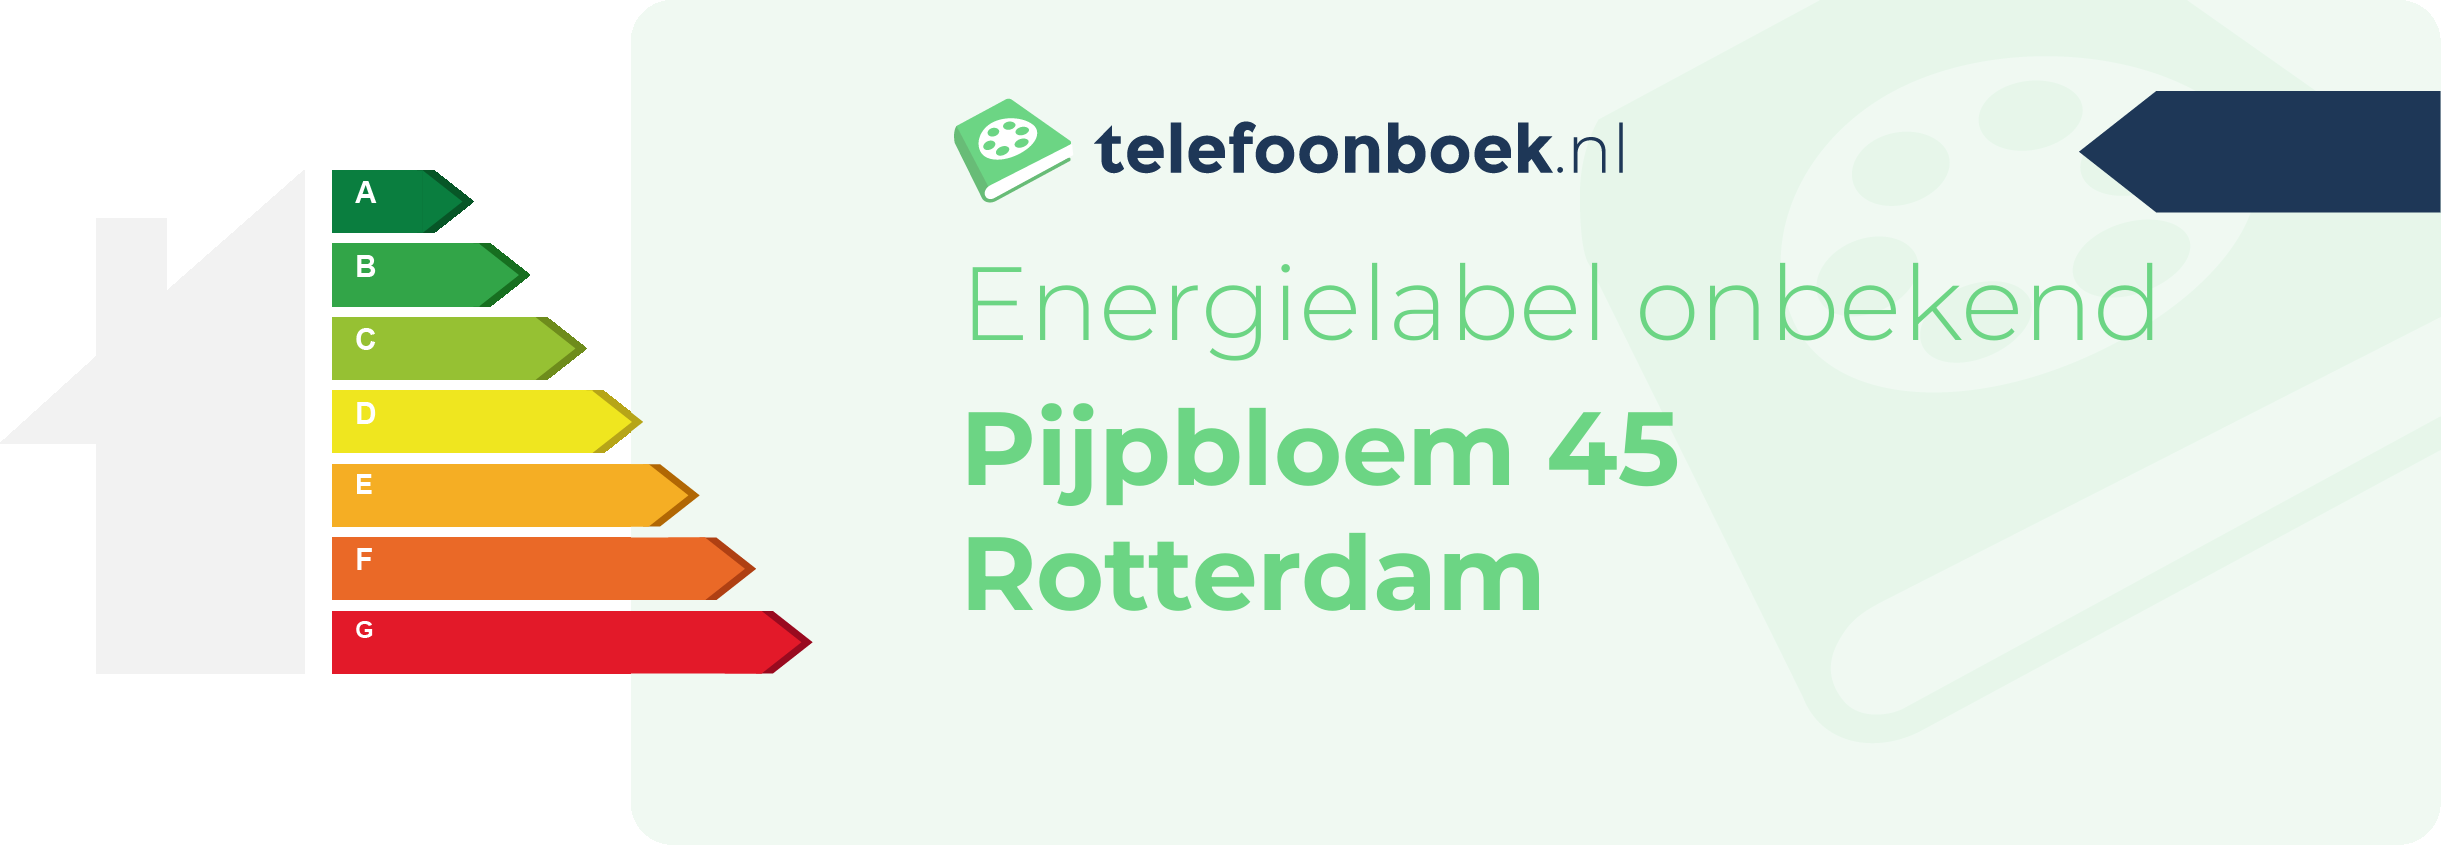 Energielabel Pijpbloem 45 Rotterdam